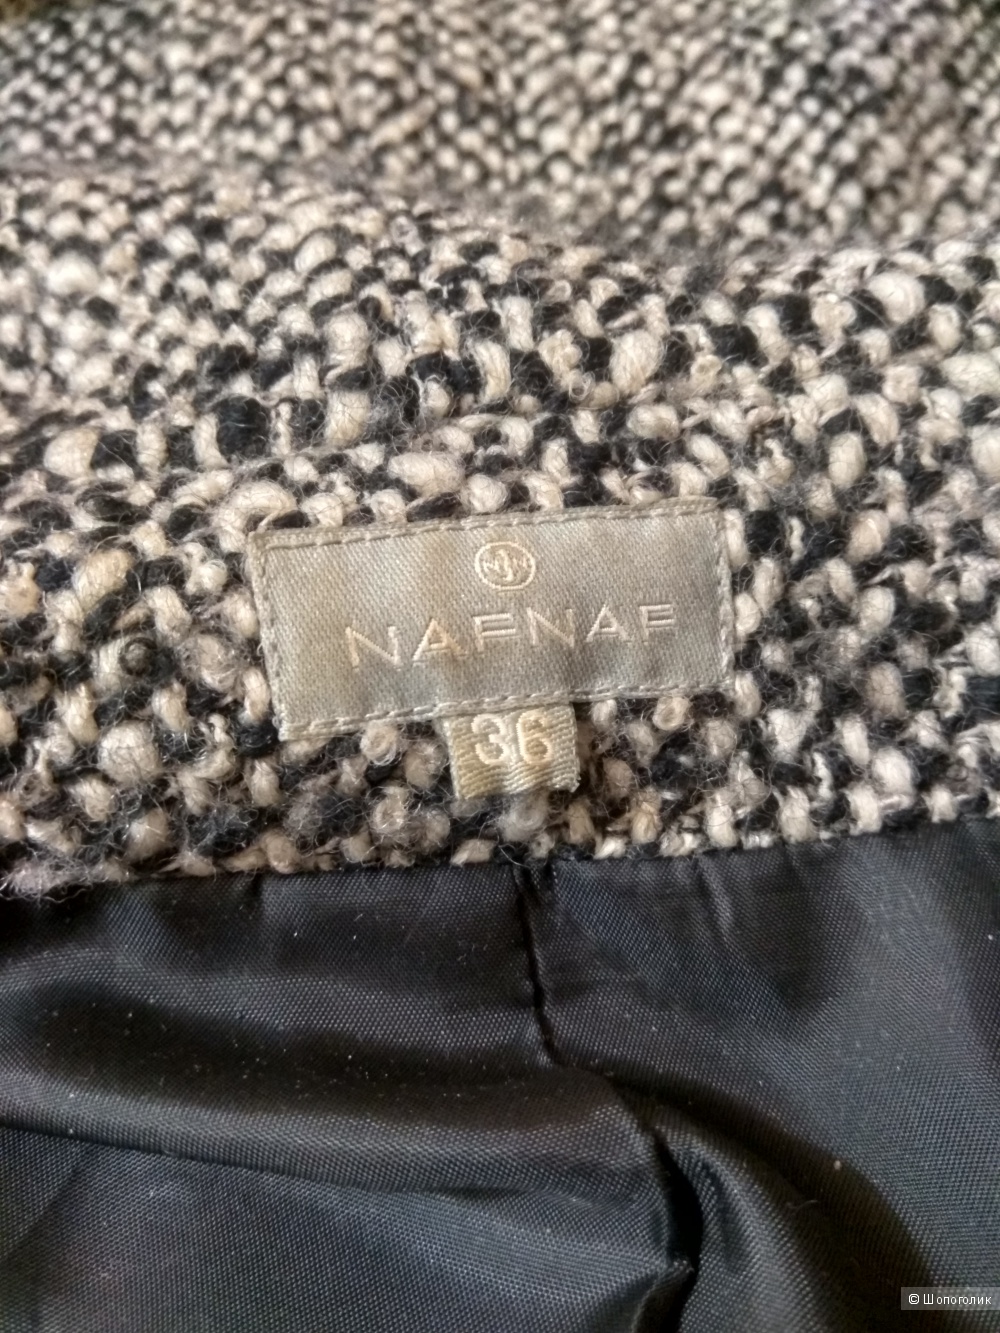 Пальто Naf Naf  размер S  (36 евр.)